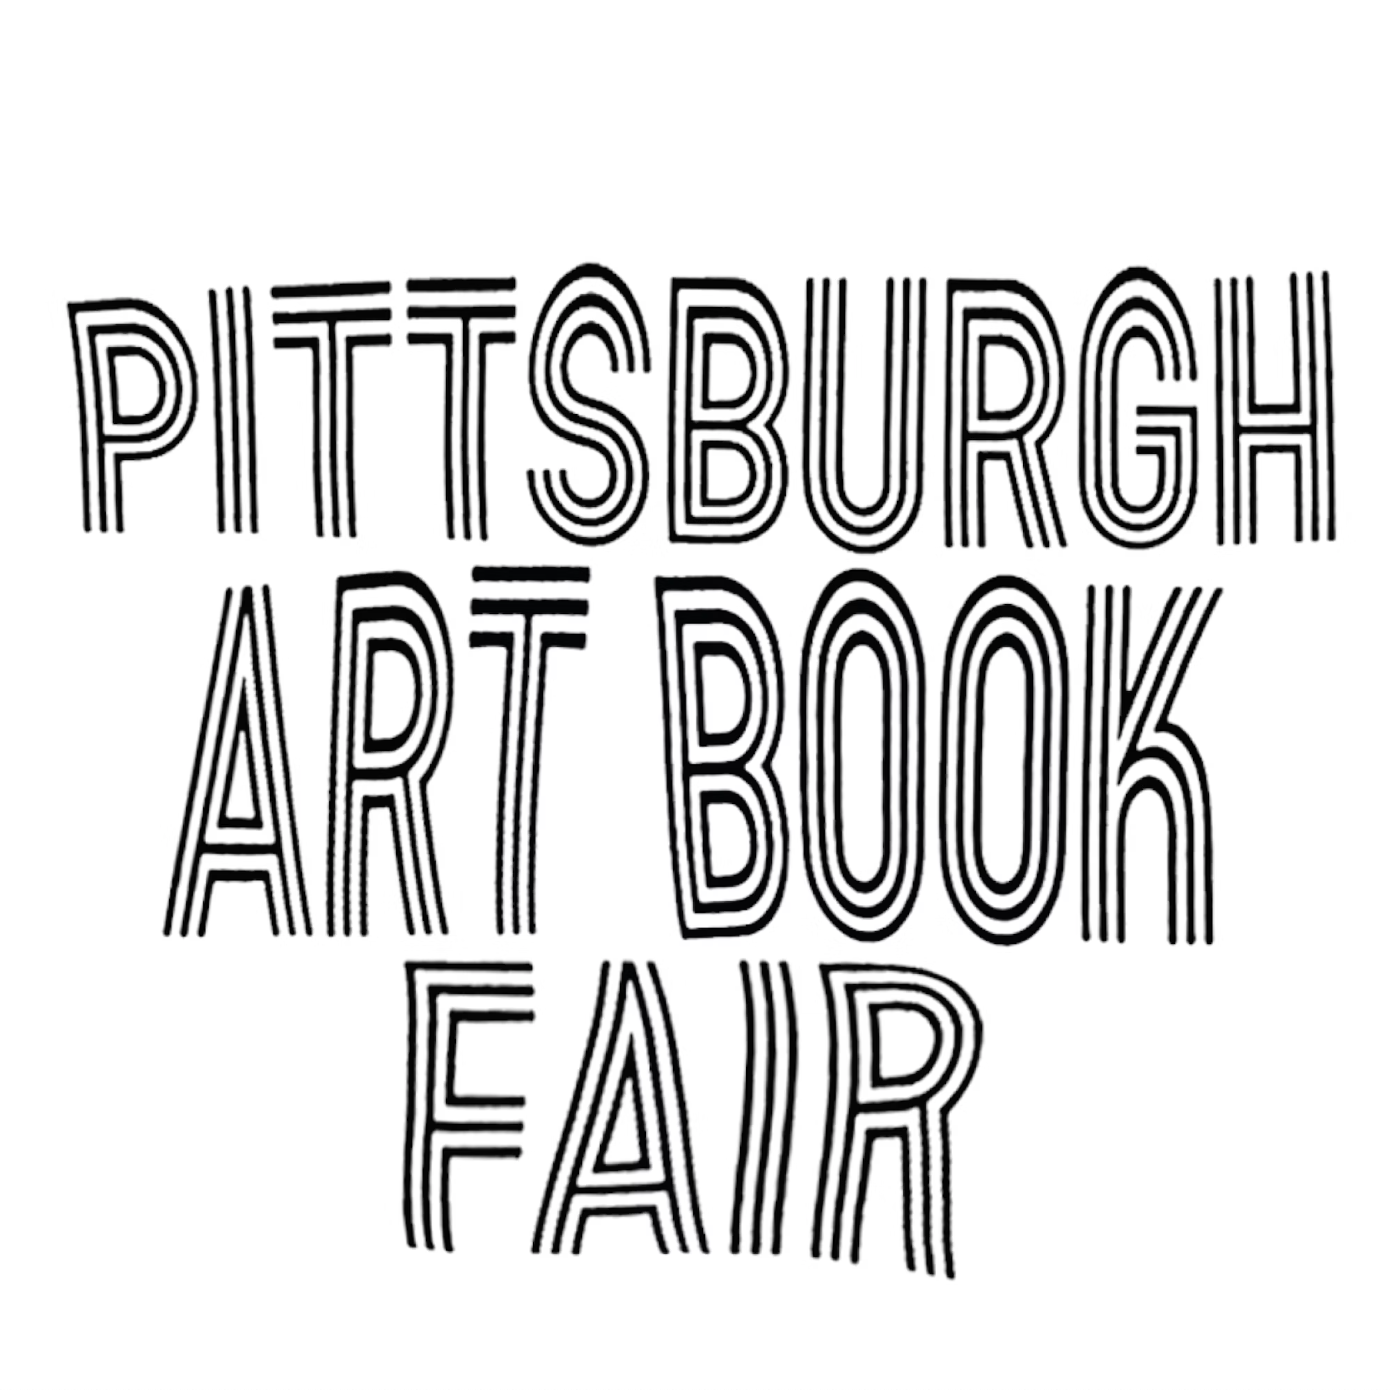 Pittsburgh Art Book Fair